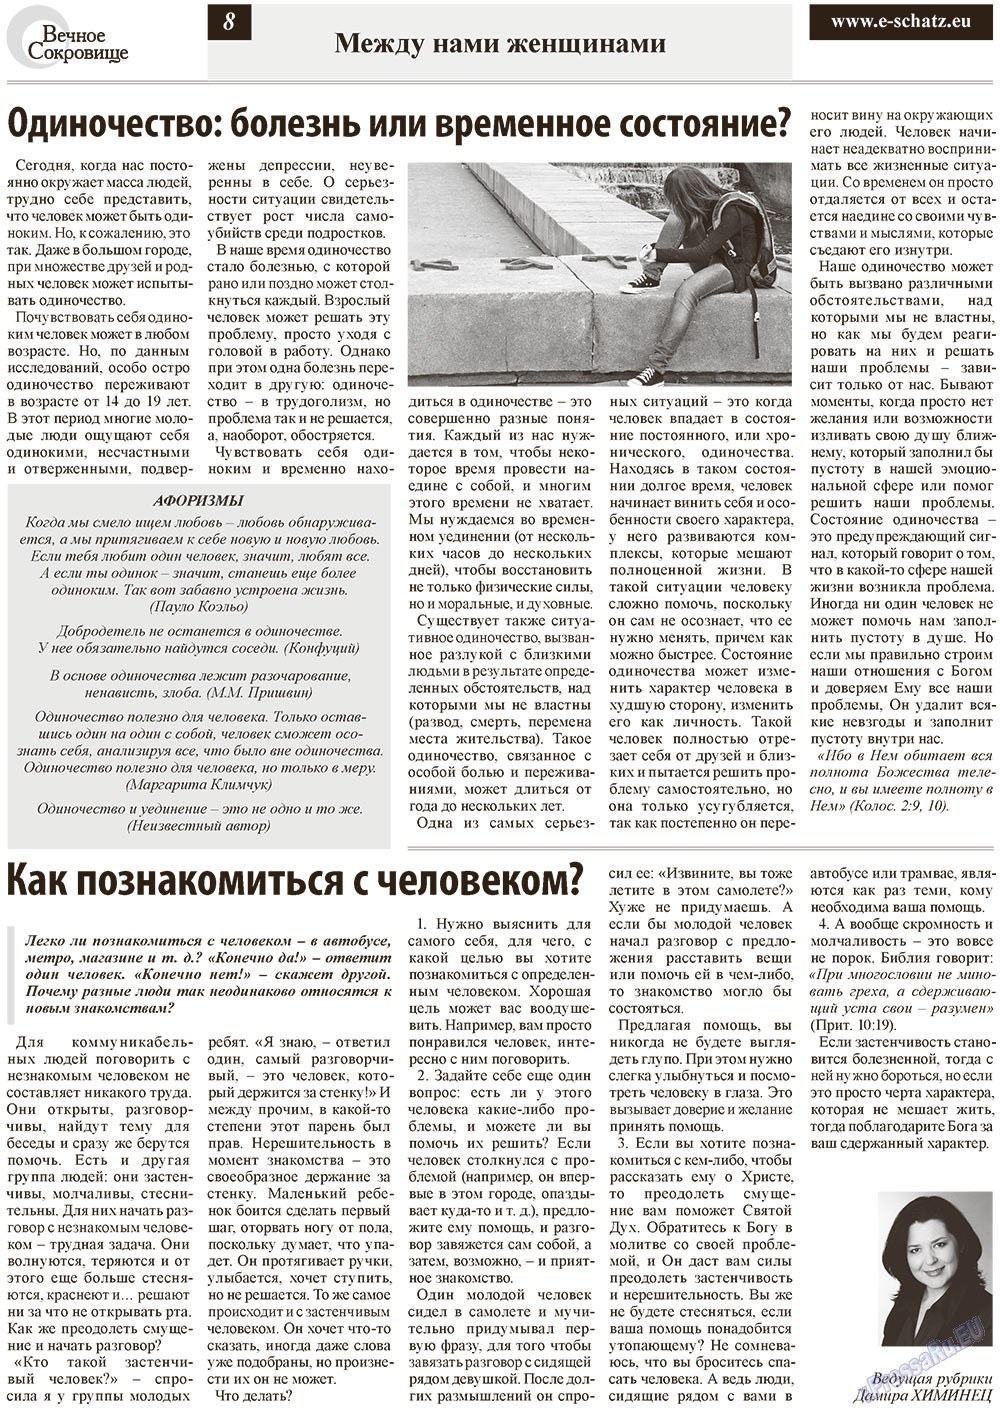 Вечное сокровище (газета). 2012 год, номер 6, стр. 8